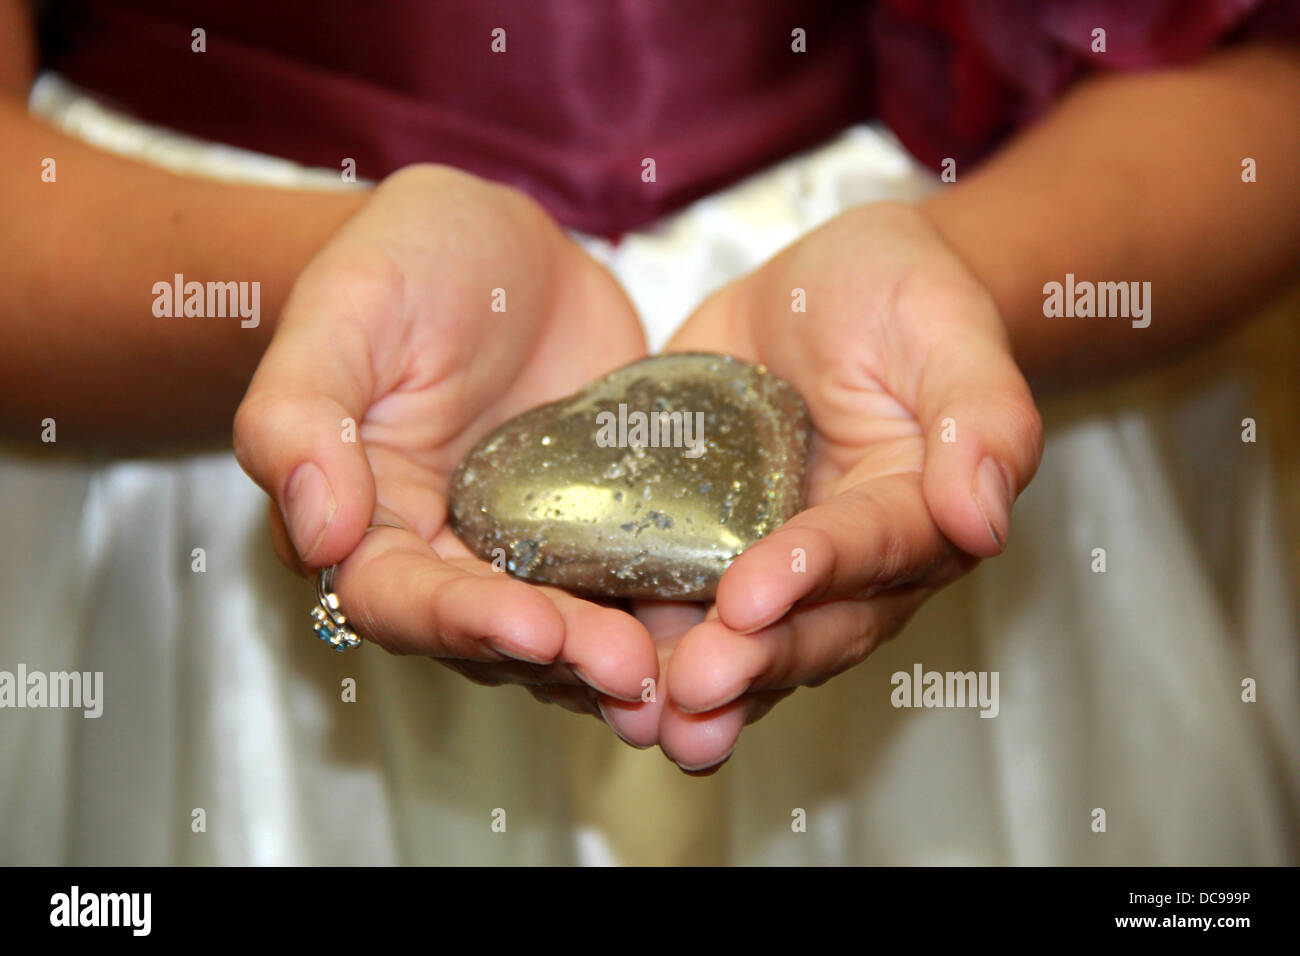 Junges Mädchen offene Hände halten herzförmigen Stein, ein stiller Ausdruck der Liebe für ihre Mutter, die bald heiraten. Stockfoto